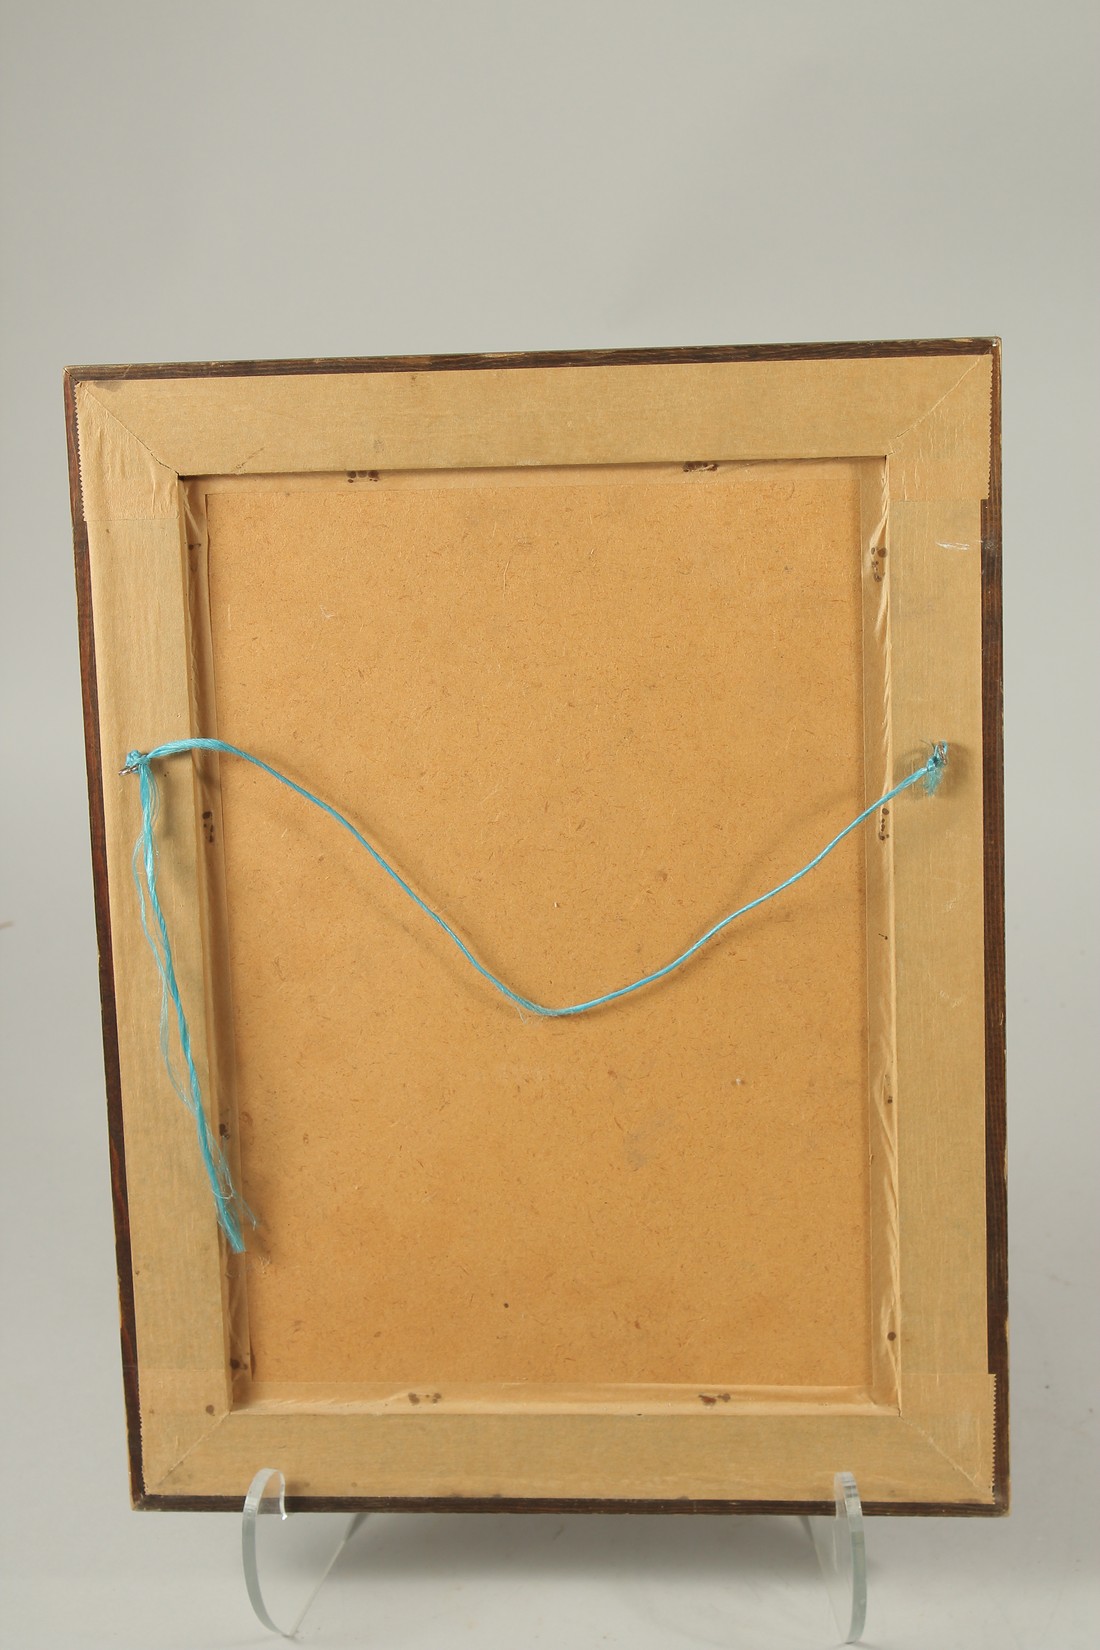 A FRAMED PRINTED SAMPLER. Elizabeth Willets 1806. 32 x 22cms. - Image 2 of 2